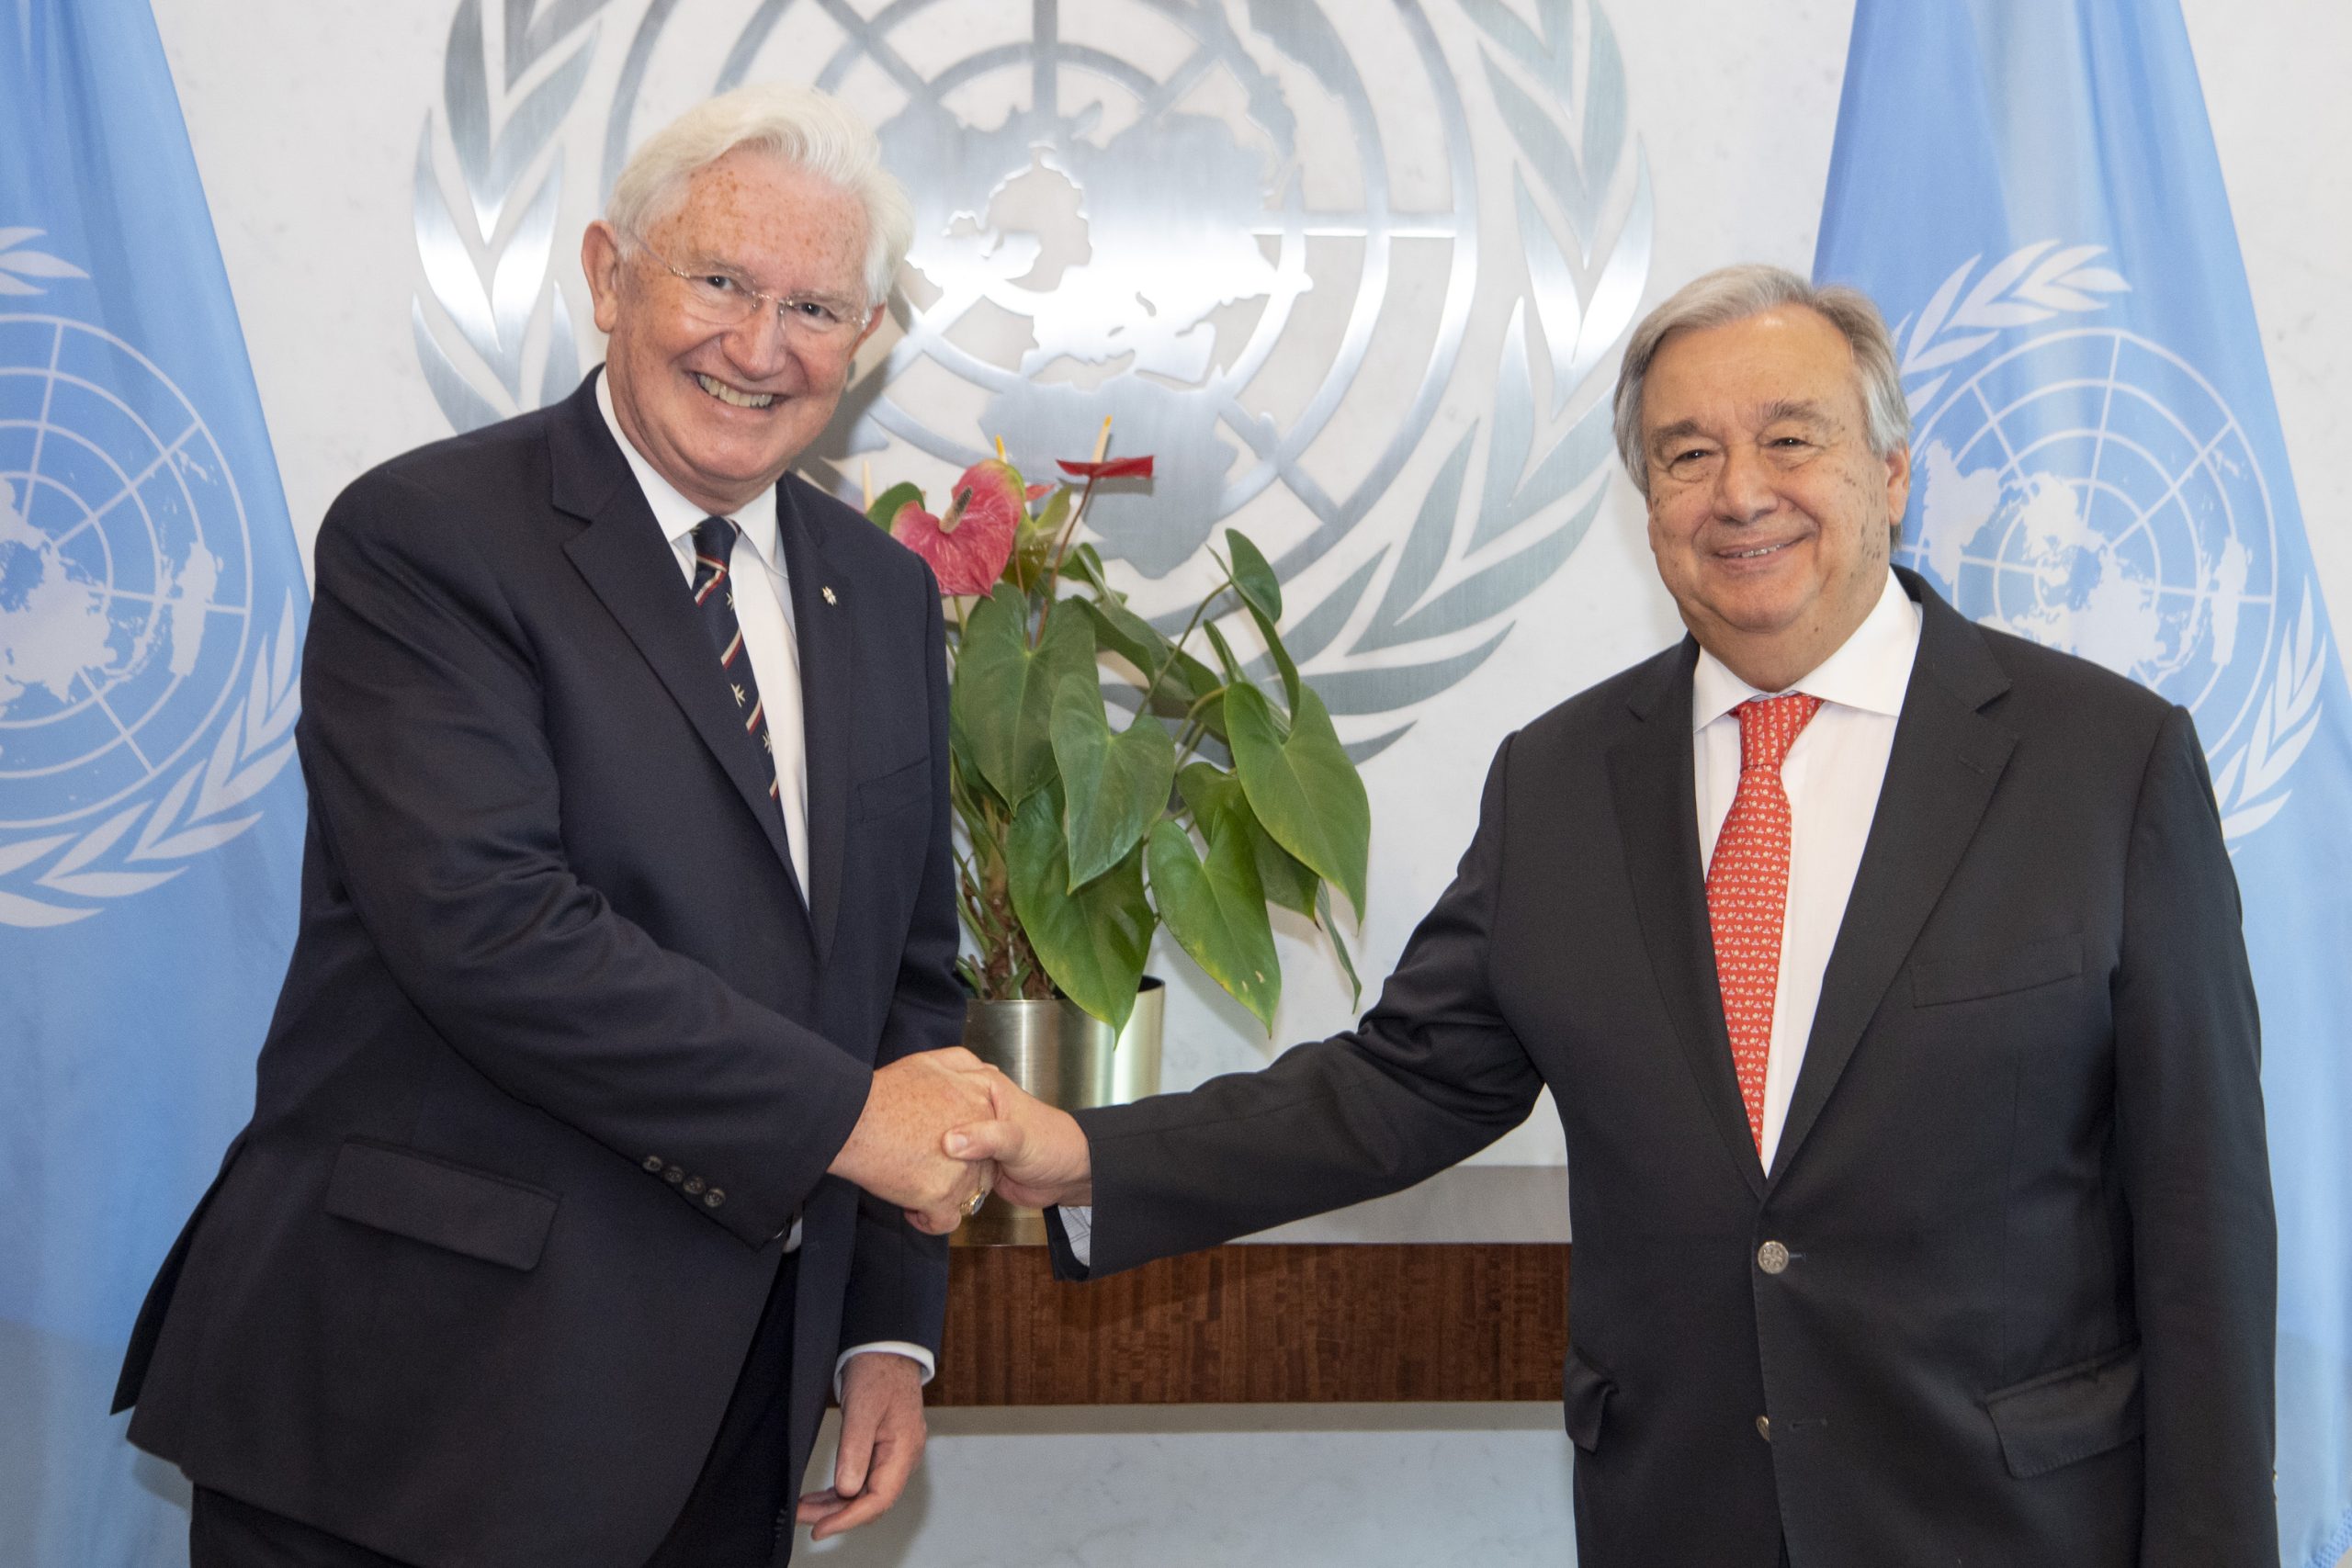 El nuevo embajador de la Orden de Malta ante las Naciones Unidas en Nueva York ha presentado sus credenciales